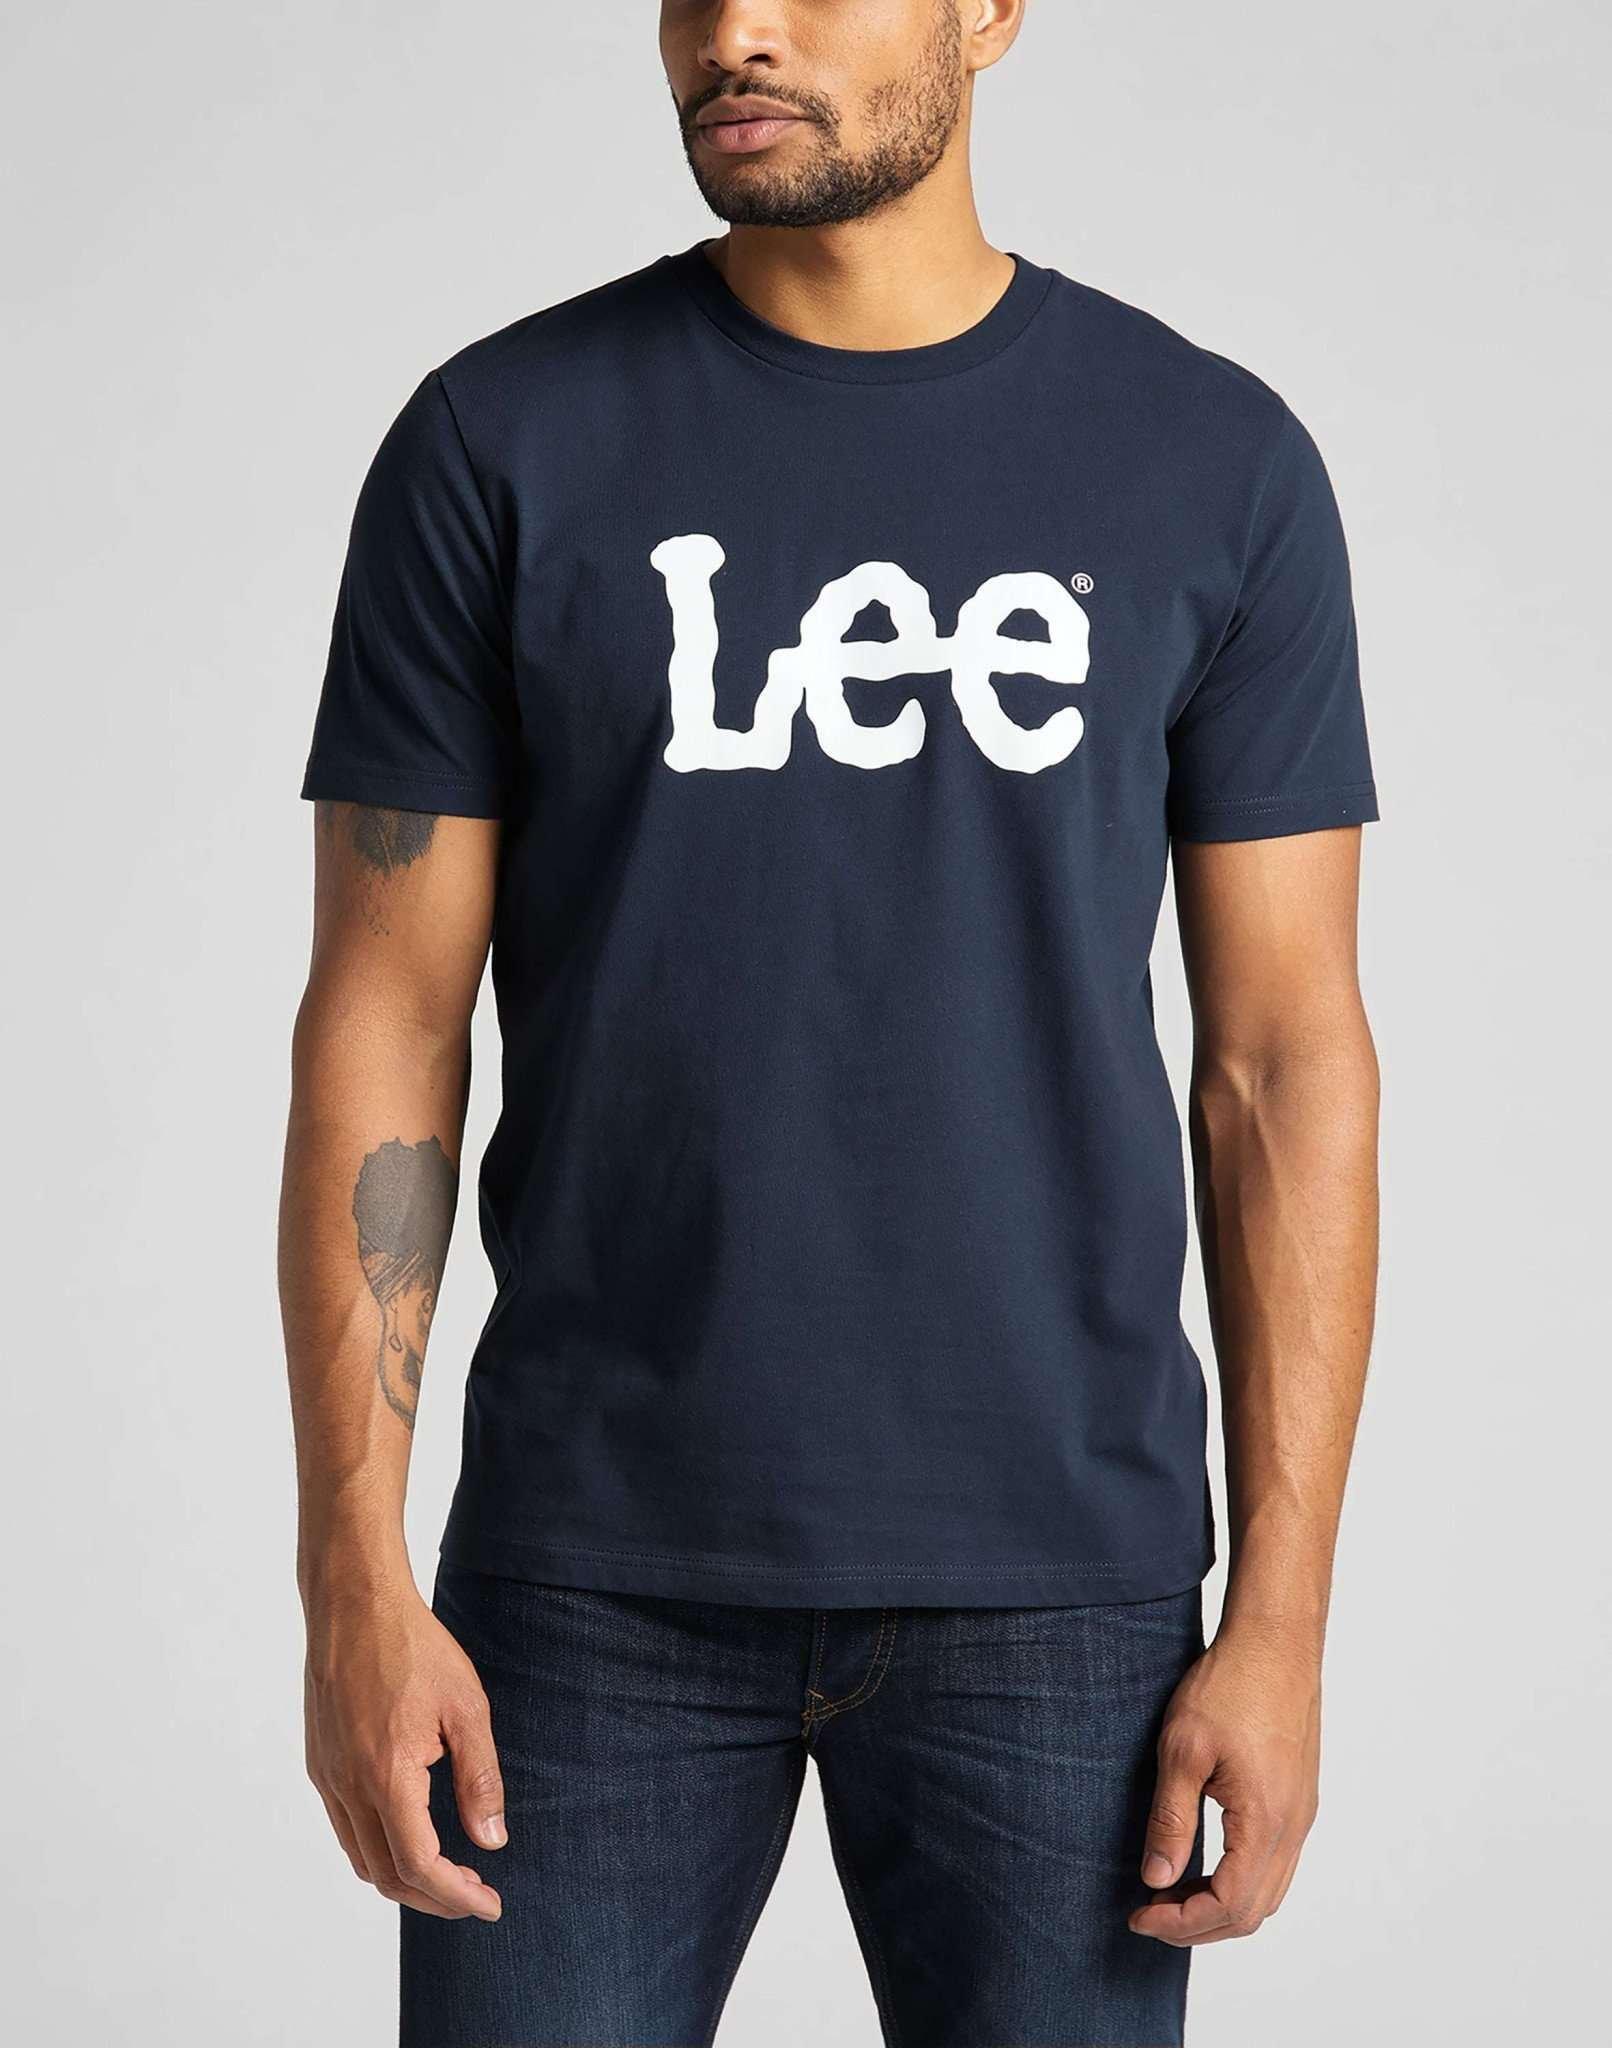 T-shirt Wobbly Logo Herren Marine XXL von Lee